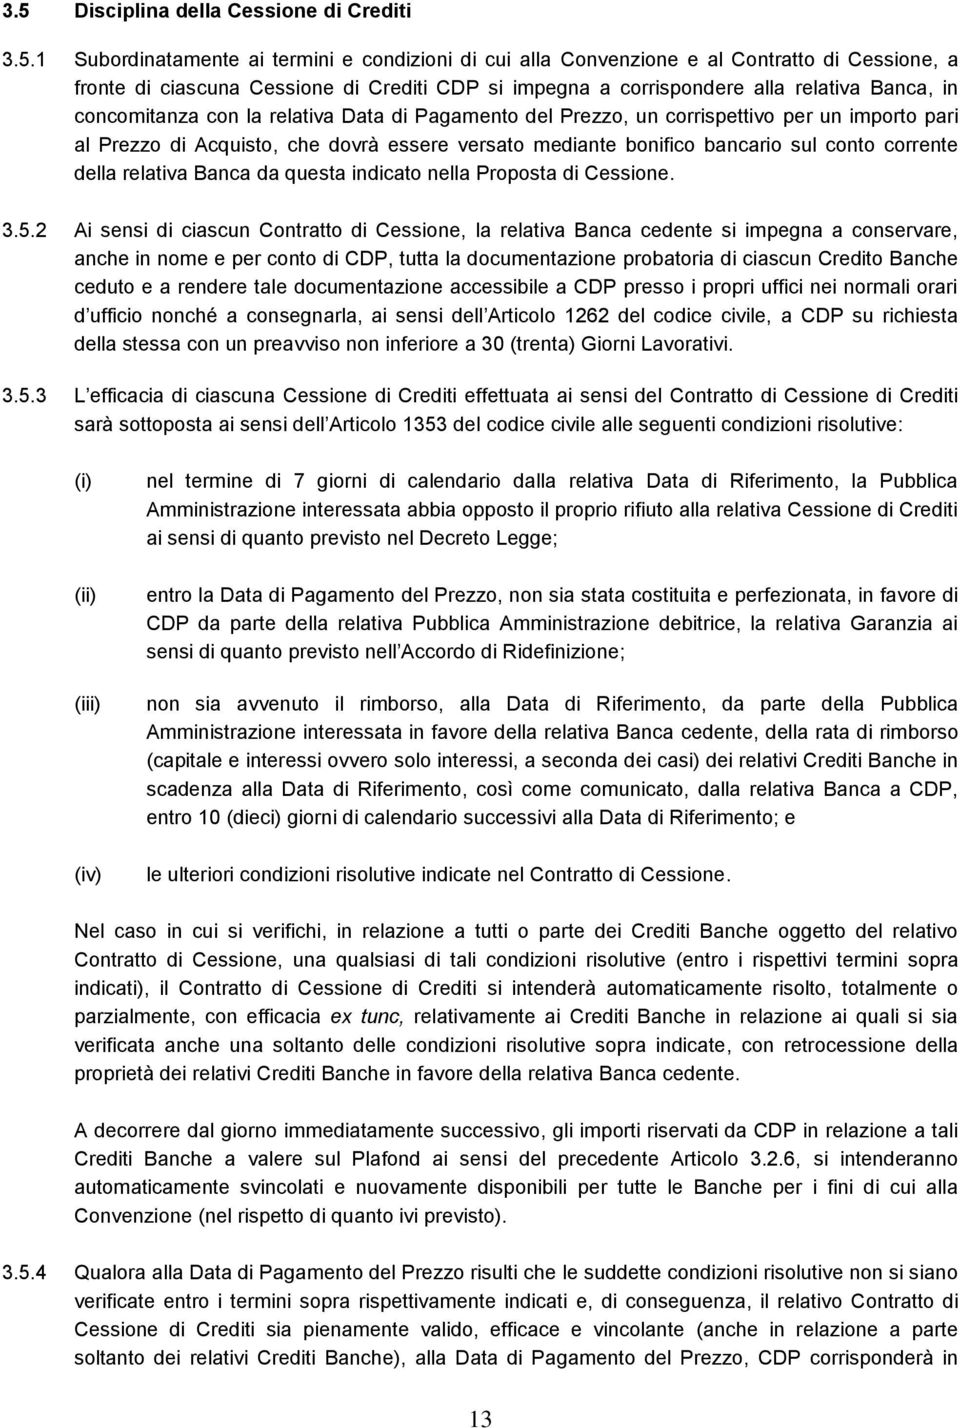 bancario sul conto corrente della relativa Banca da questa indicato nella Proposta di Cessione. 3.5.